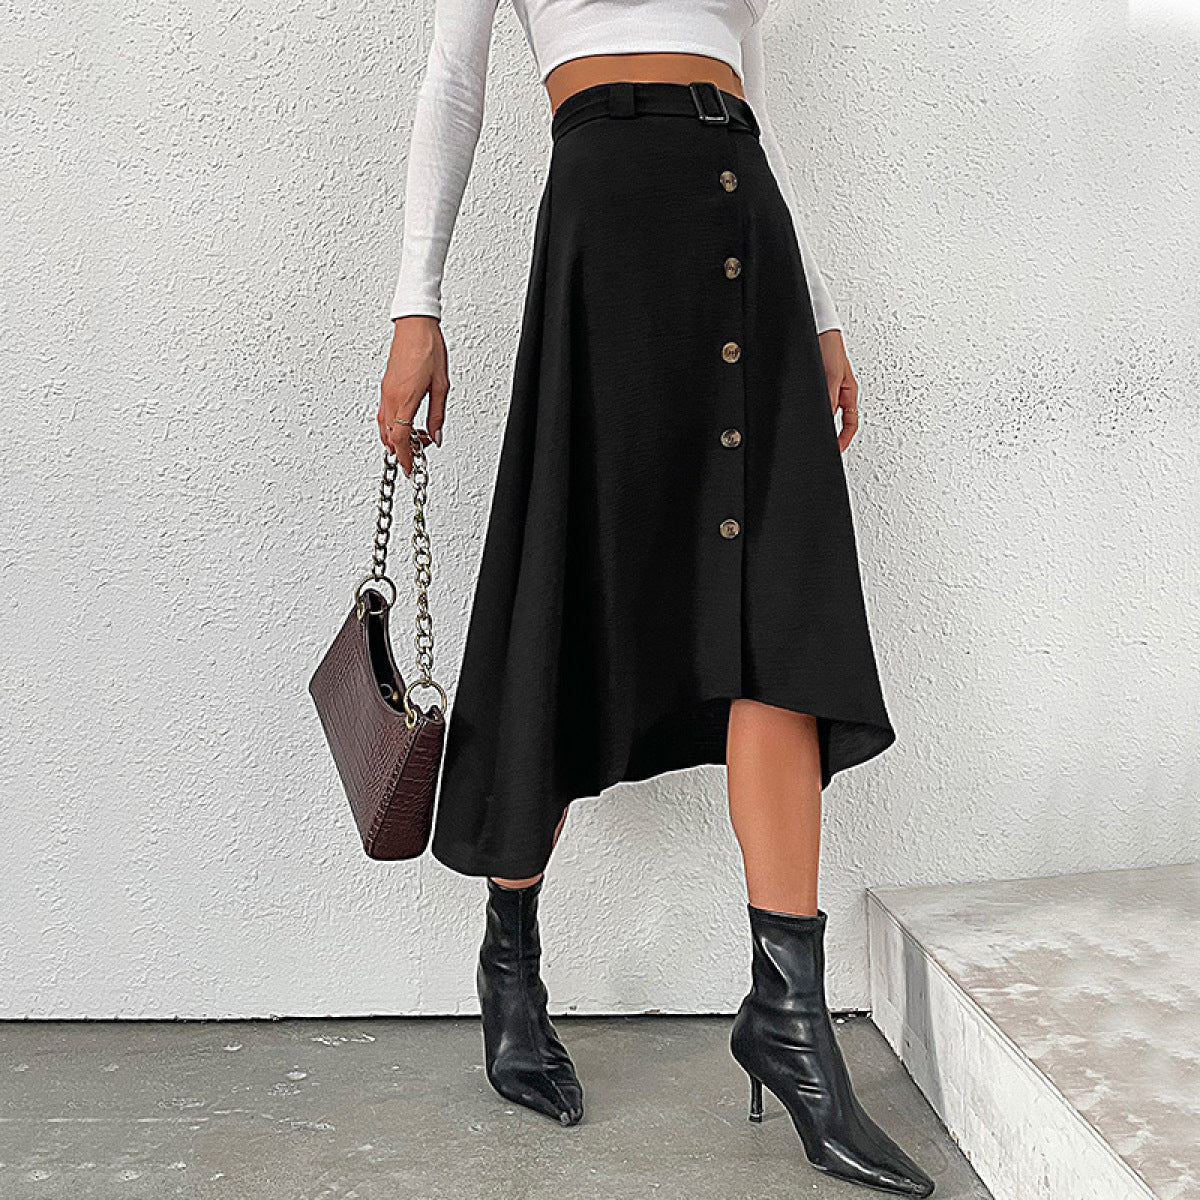 Buttoned Asymmetrical Skirt with Belt